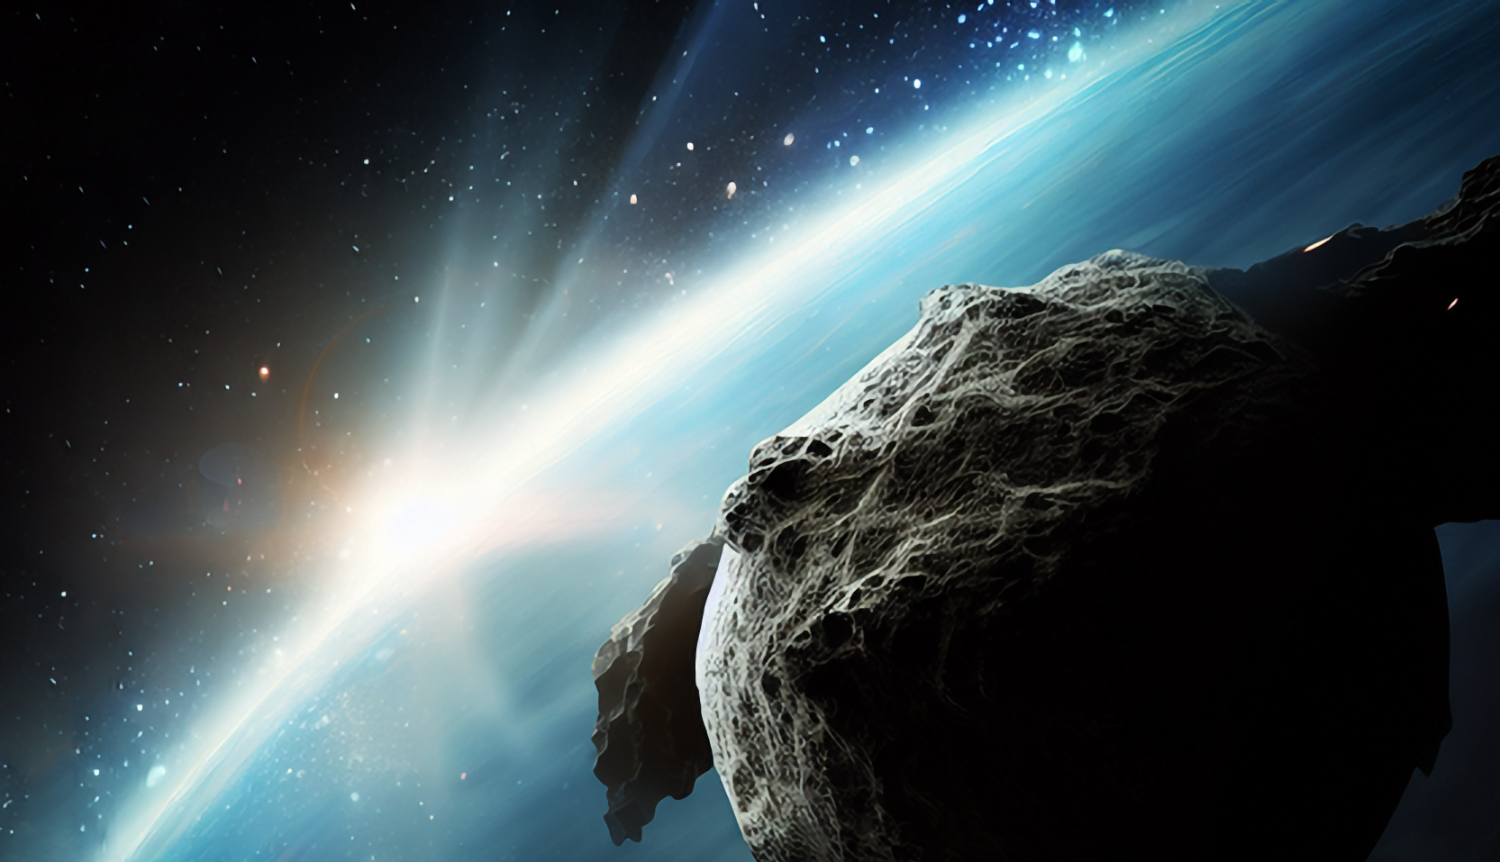 Российские учёные предупредили о максимальном сближении астероида с Землёй за текущее столетие